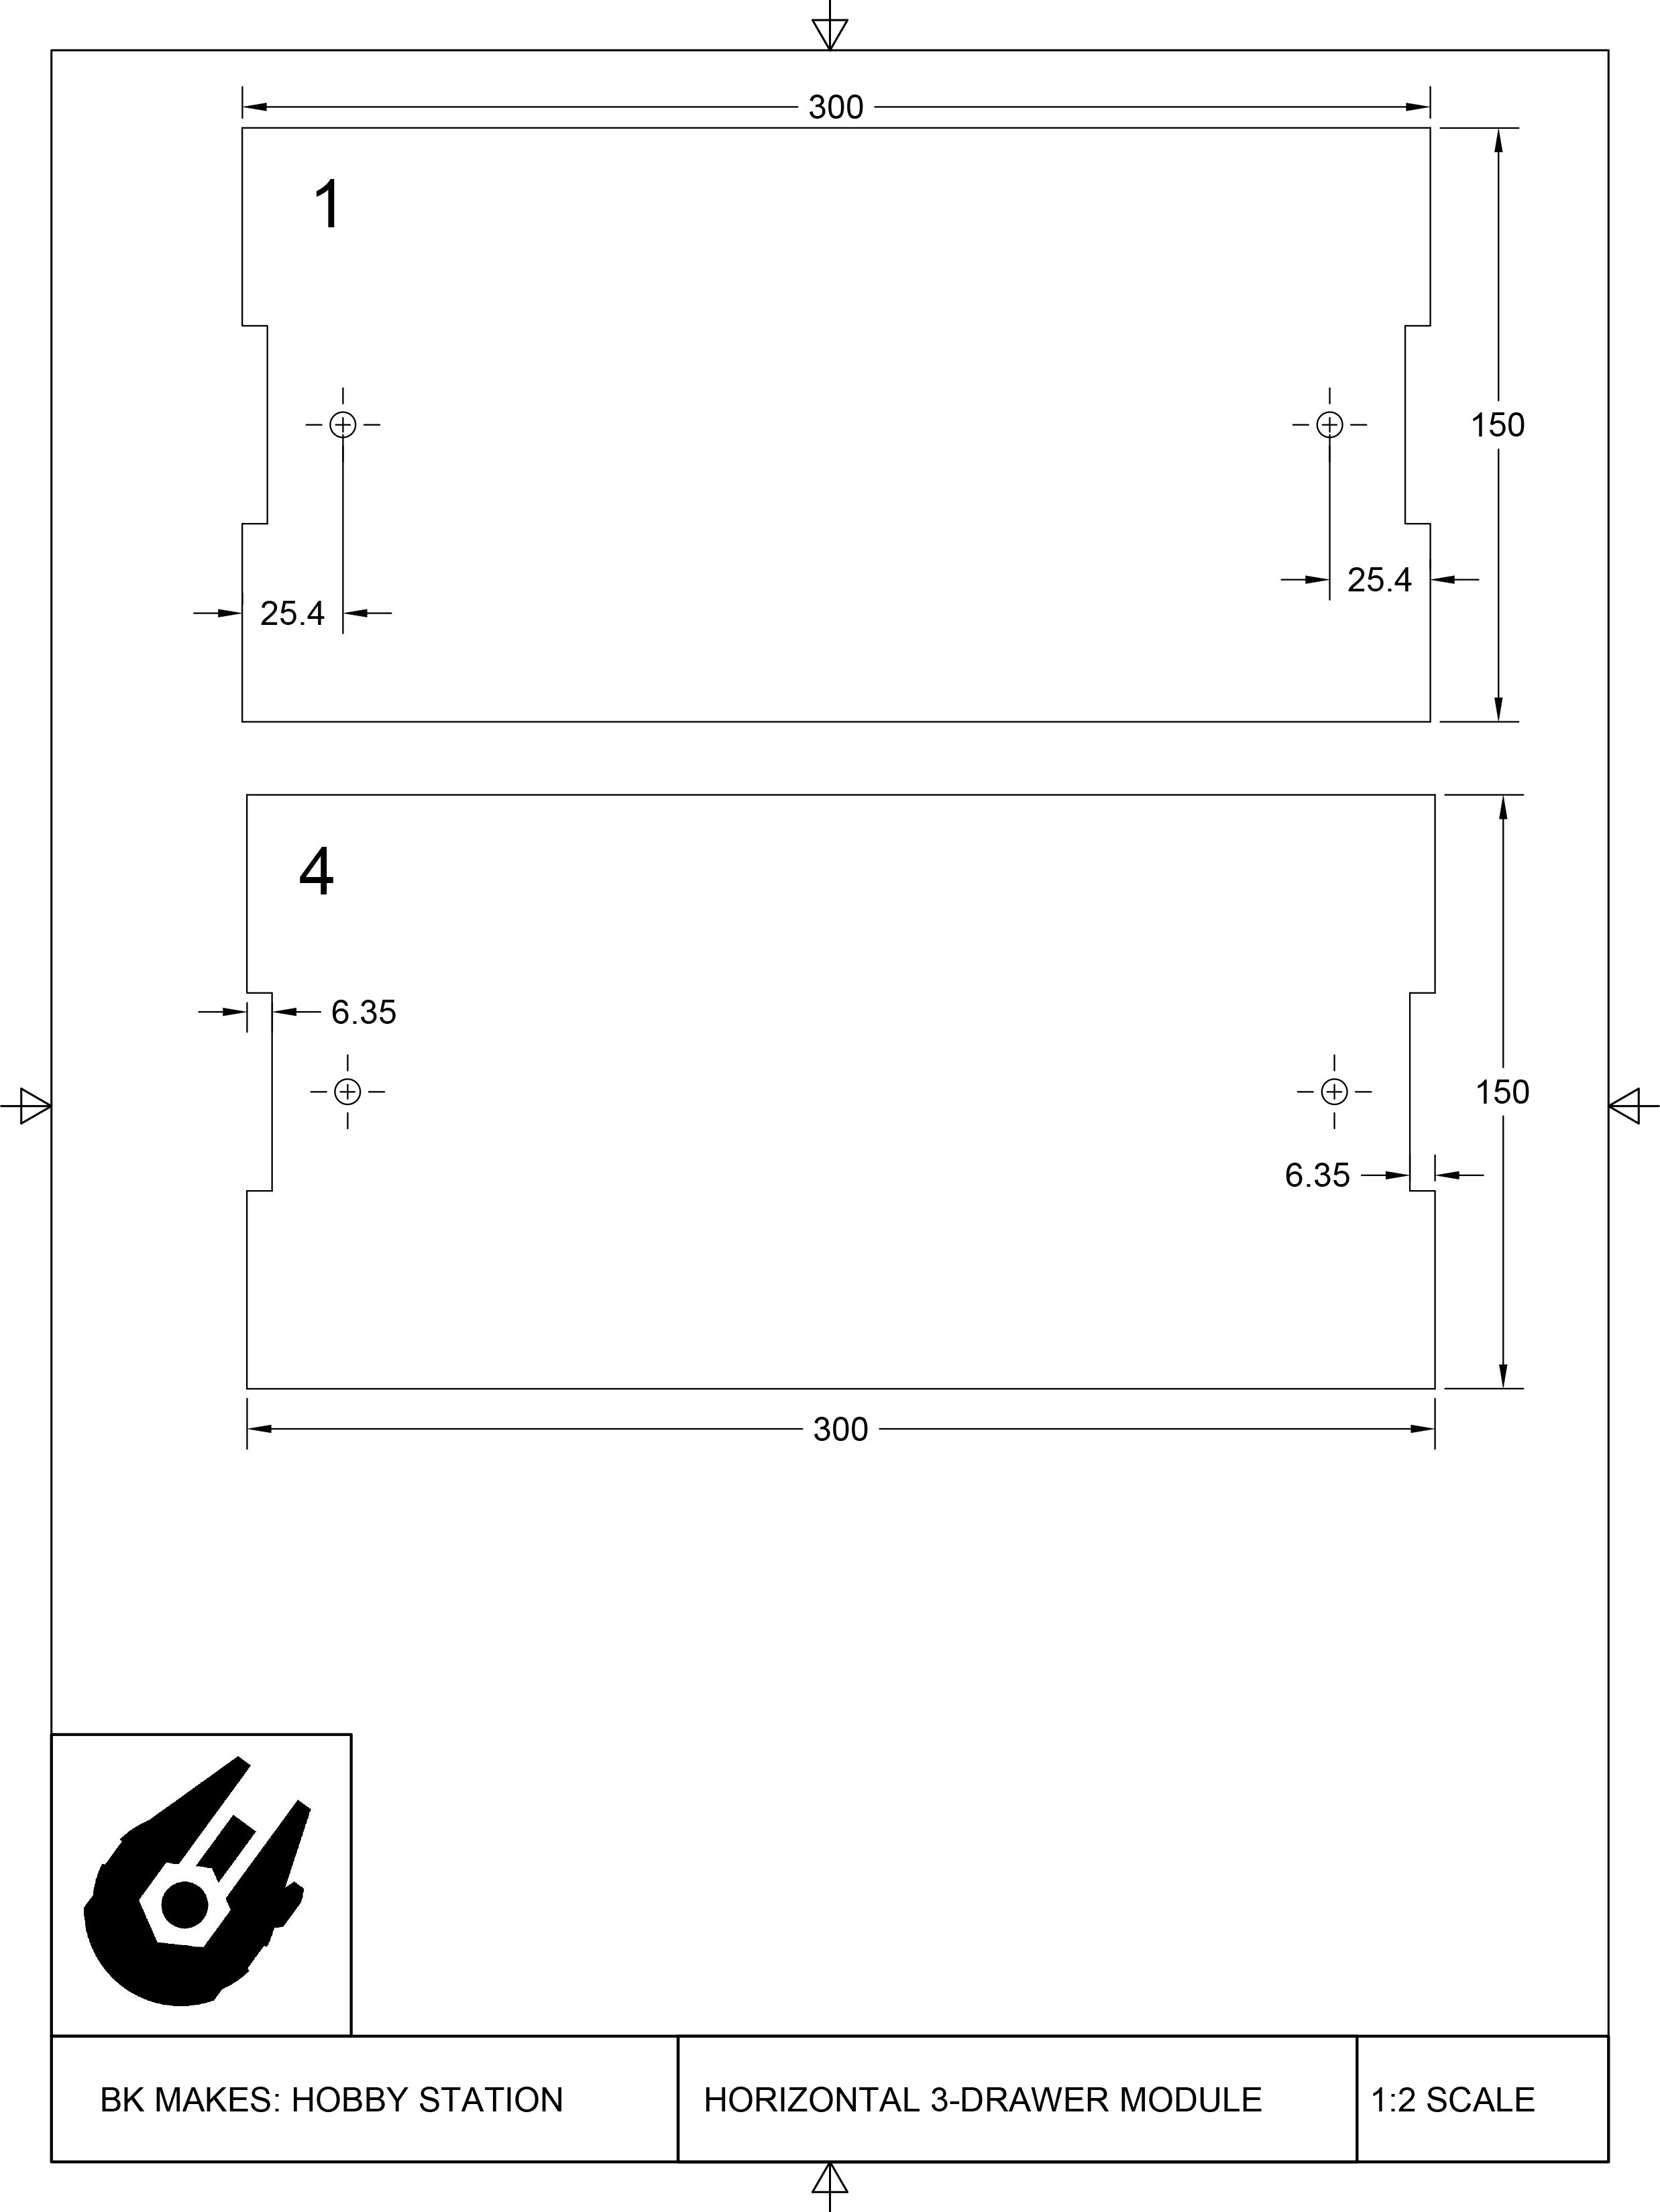 Horizontal 3-Drawer Module Templates-1.jpg